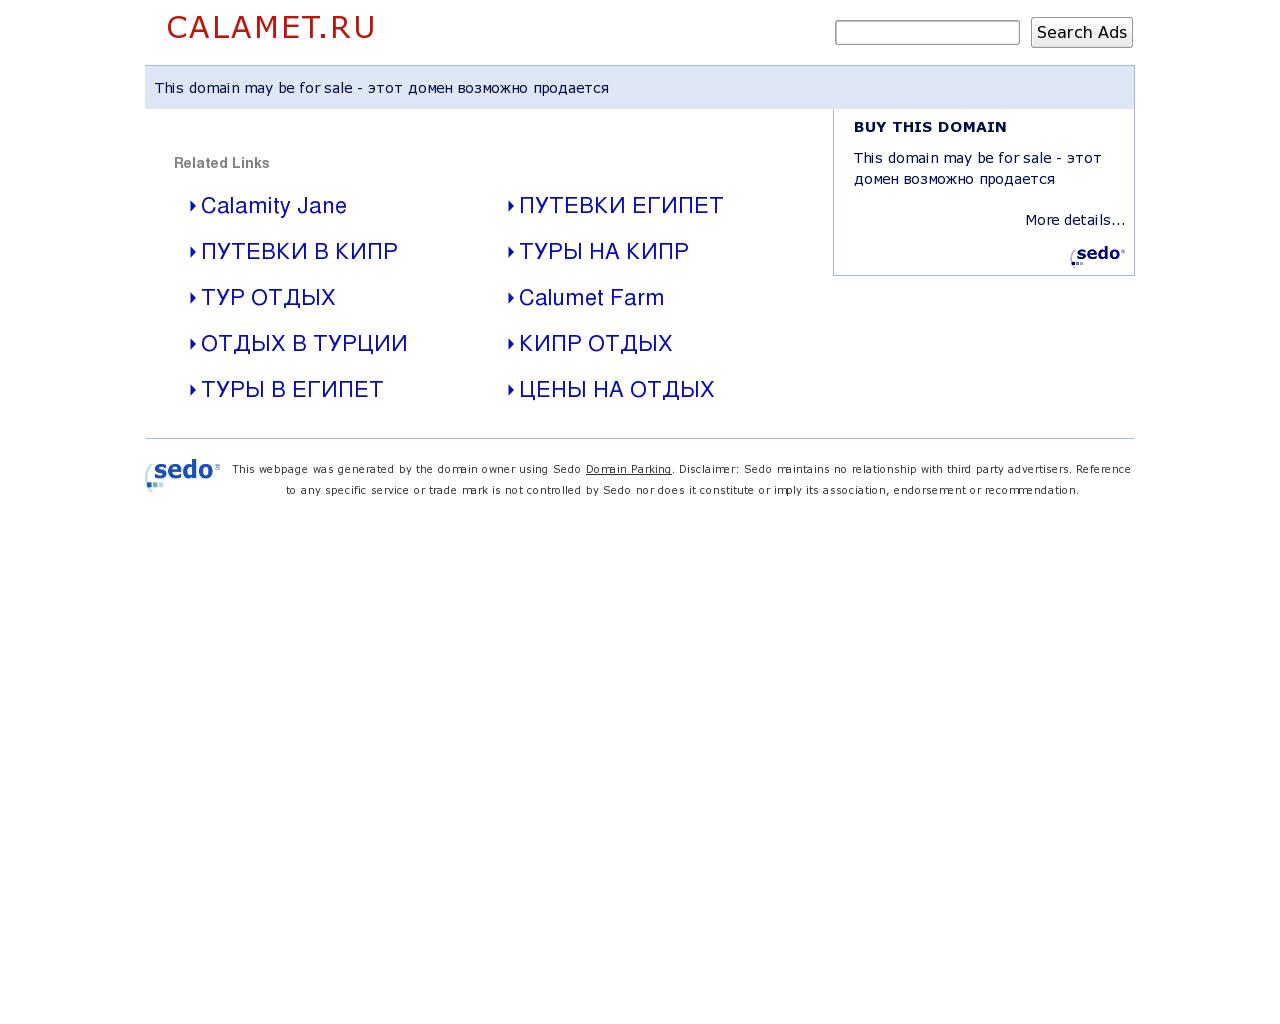 Изображение сайта calamet.ru в разрешении 1280x1024